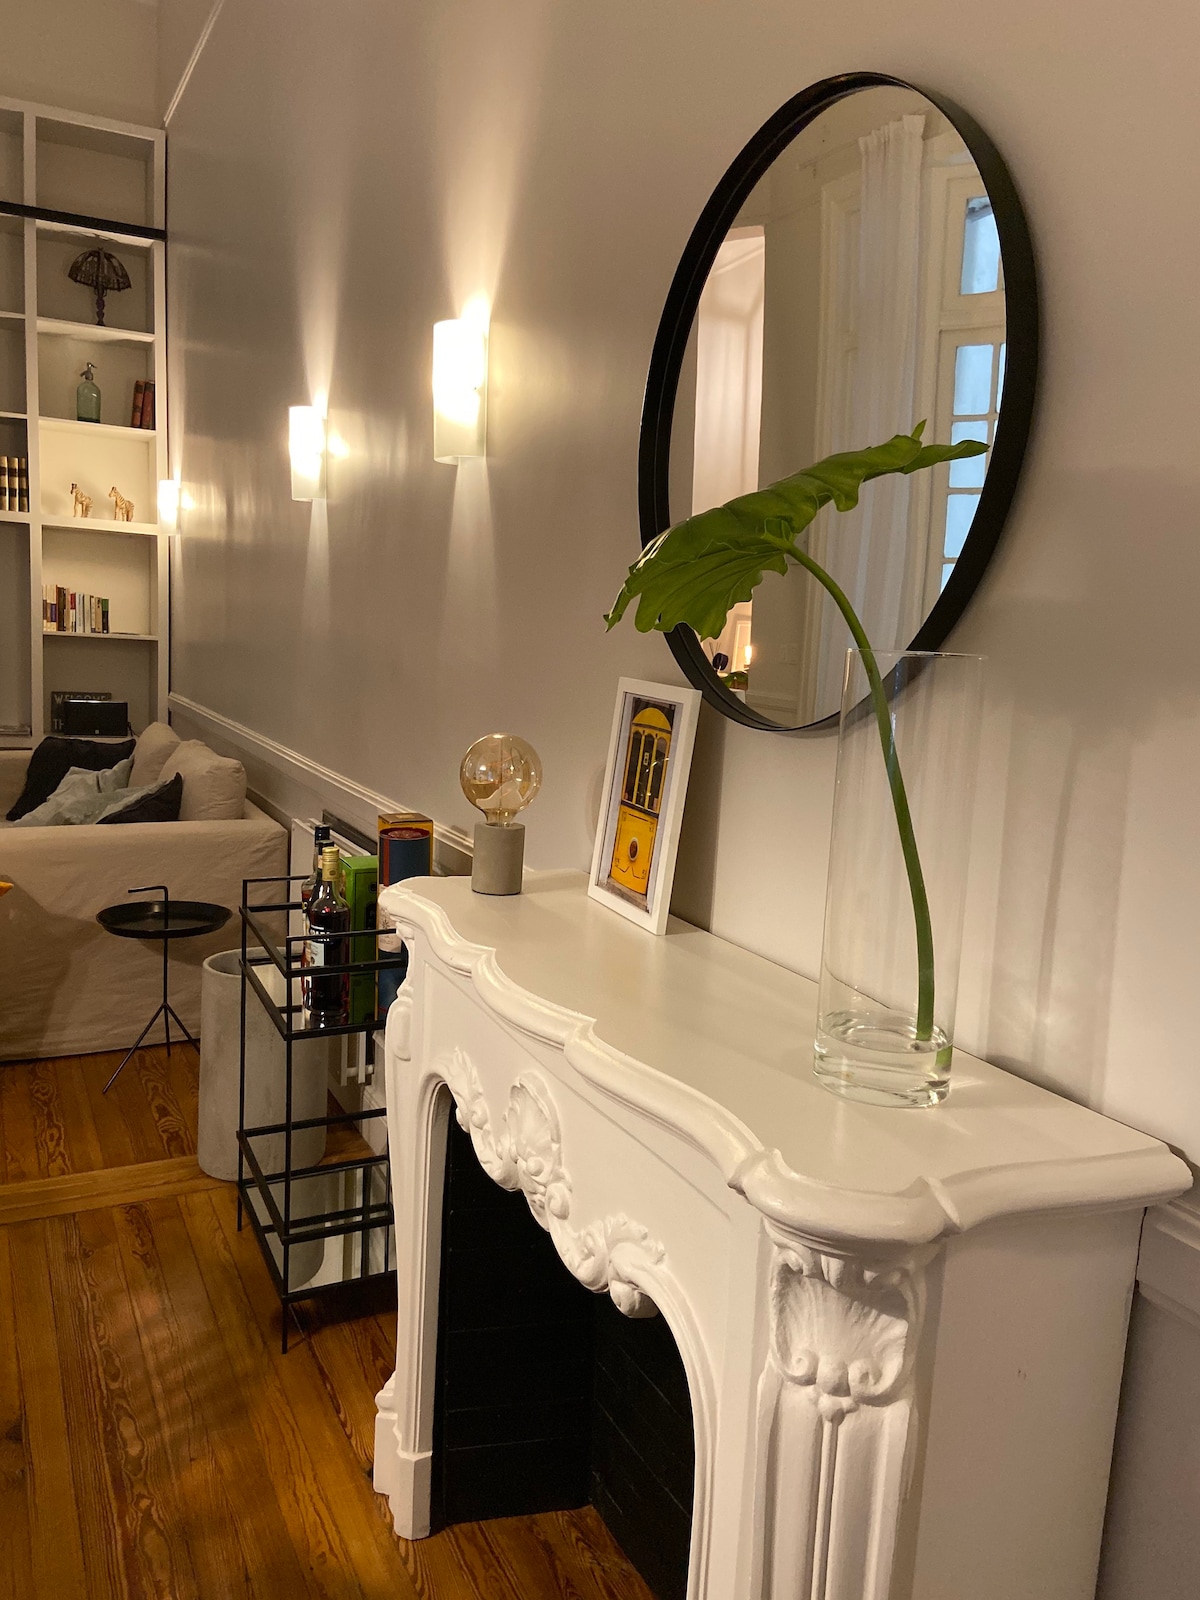 雷科莱塔的经典风格公寓- 2018年翻新